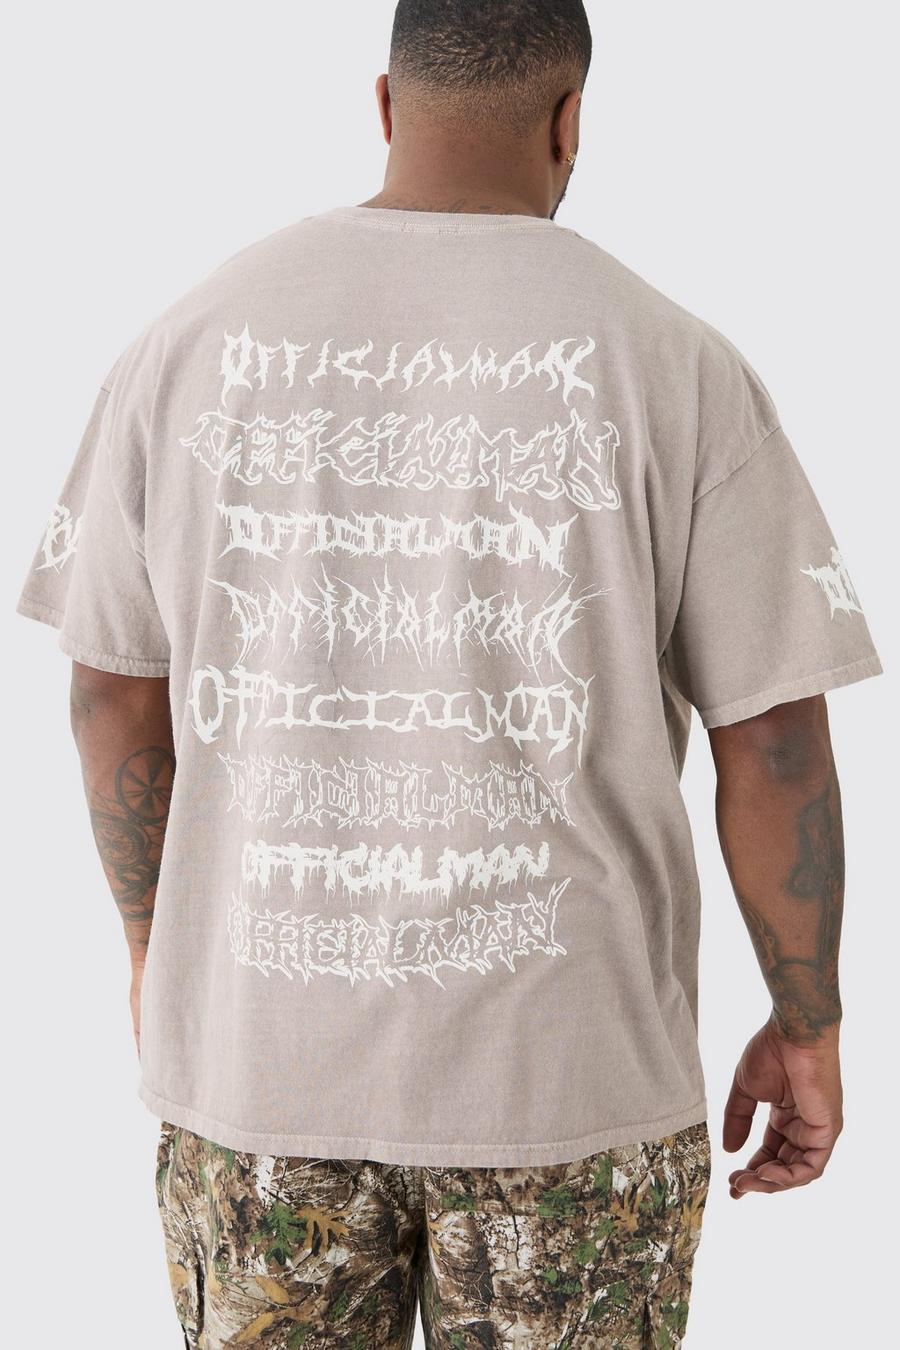 Charcoal Plus Gebleekt Official Man Tour T-Shirt